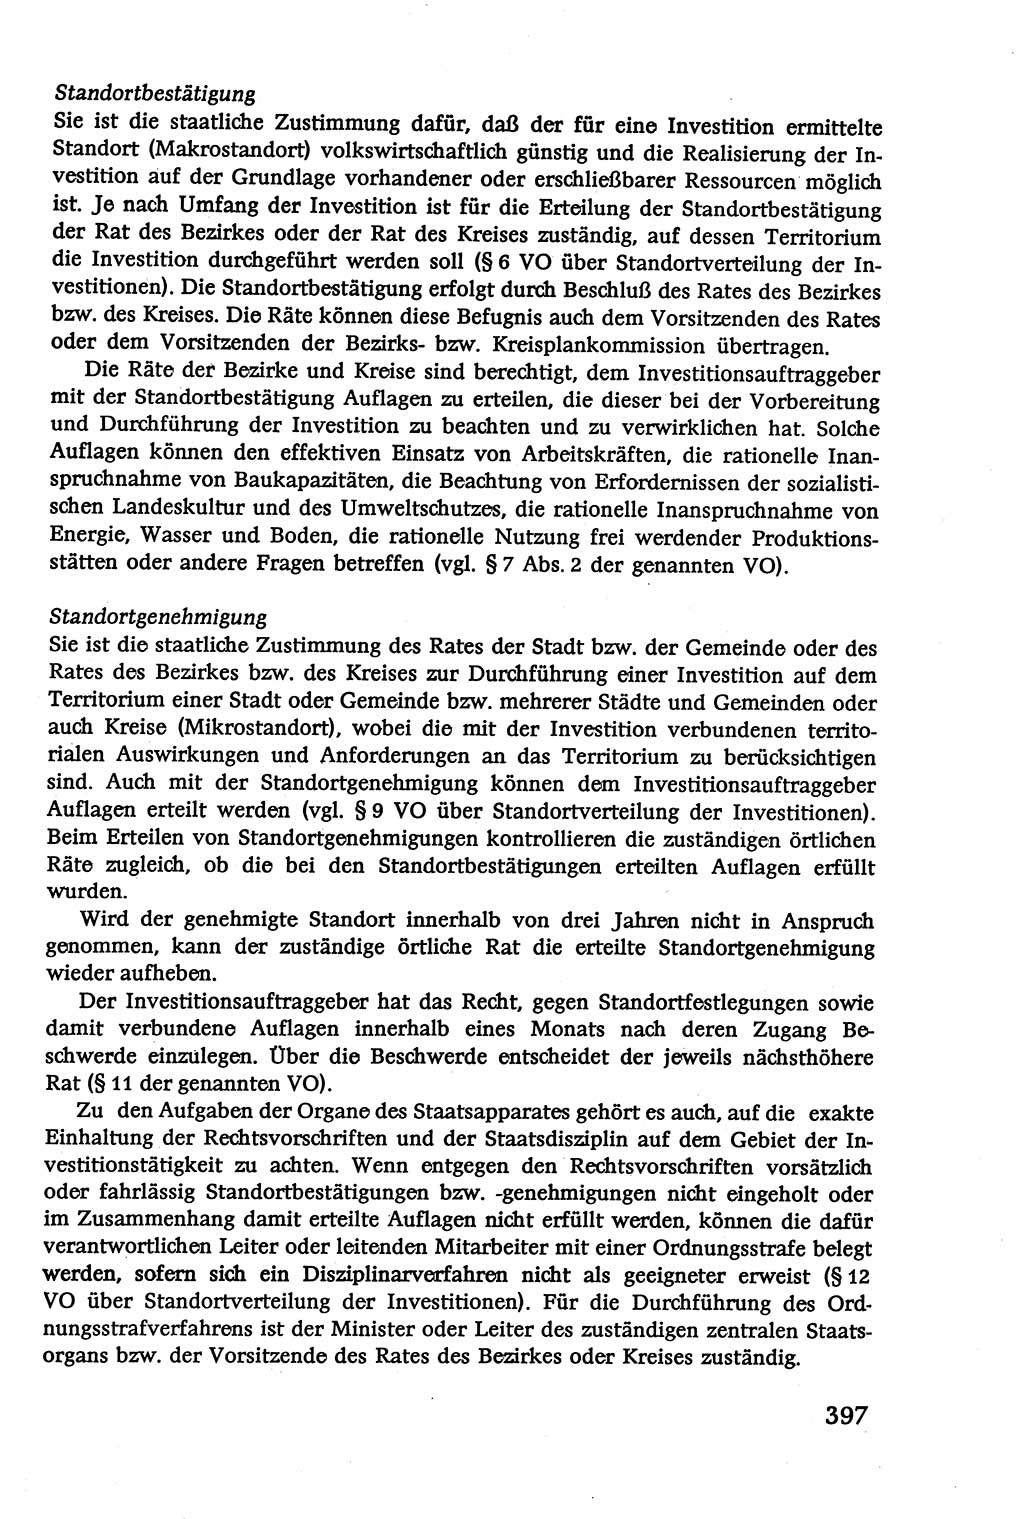 Verwaltungsrecht [Deutsche Demokratische Republik (DDR)], Lehrbuch 1979, Seite 397 (Verw.-R. DDR Lb. 1979, S. 397)